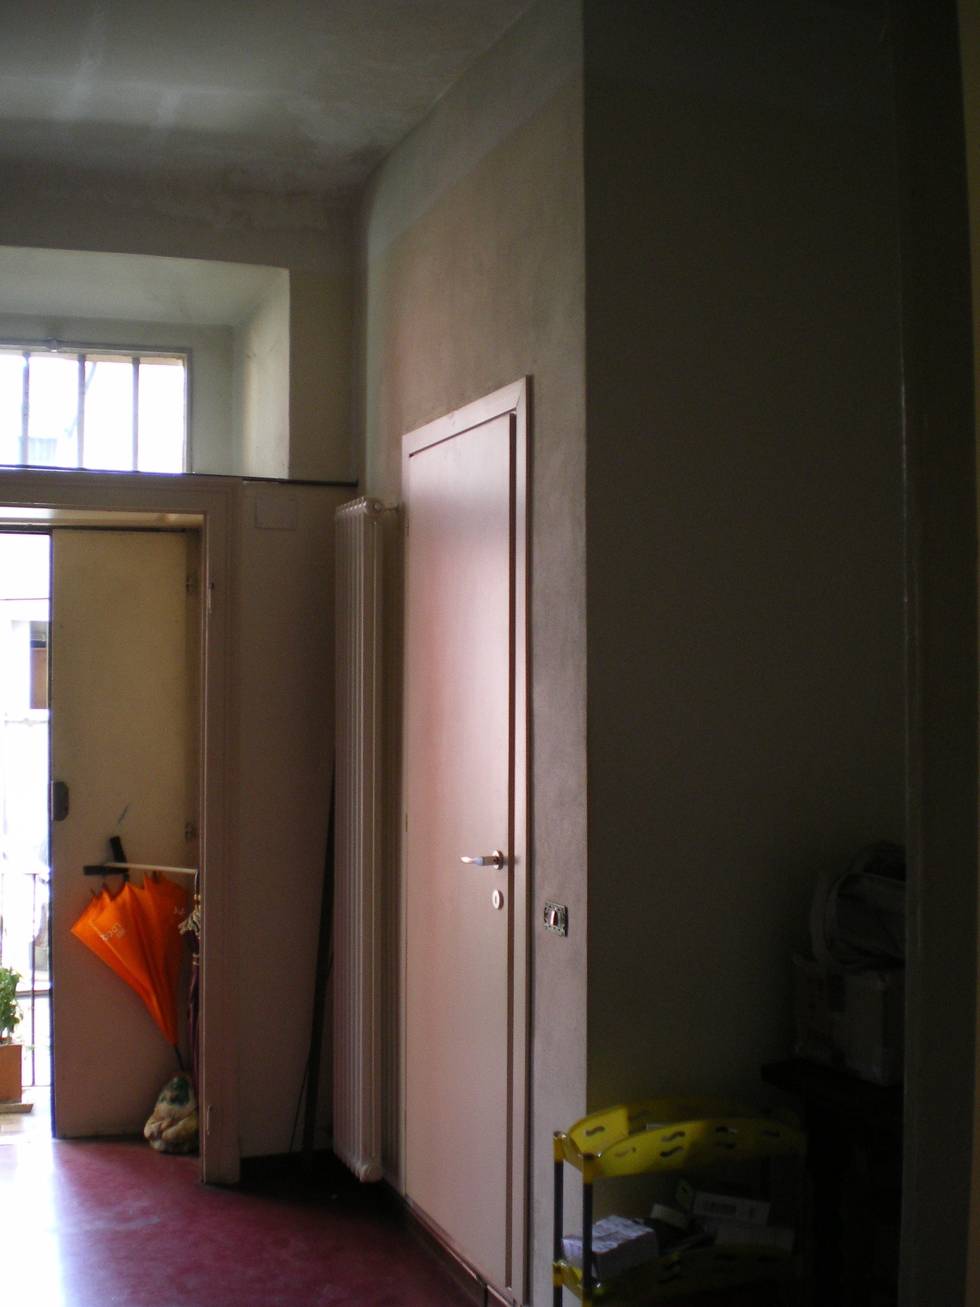 До и После: Ремонт квартиры в хрущевке 34 кв. метра- фотографии
				